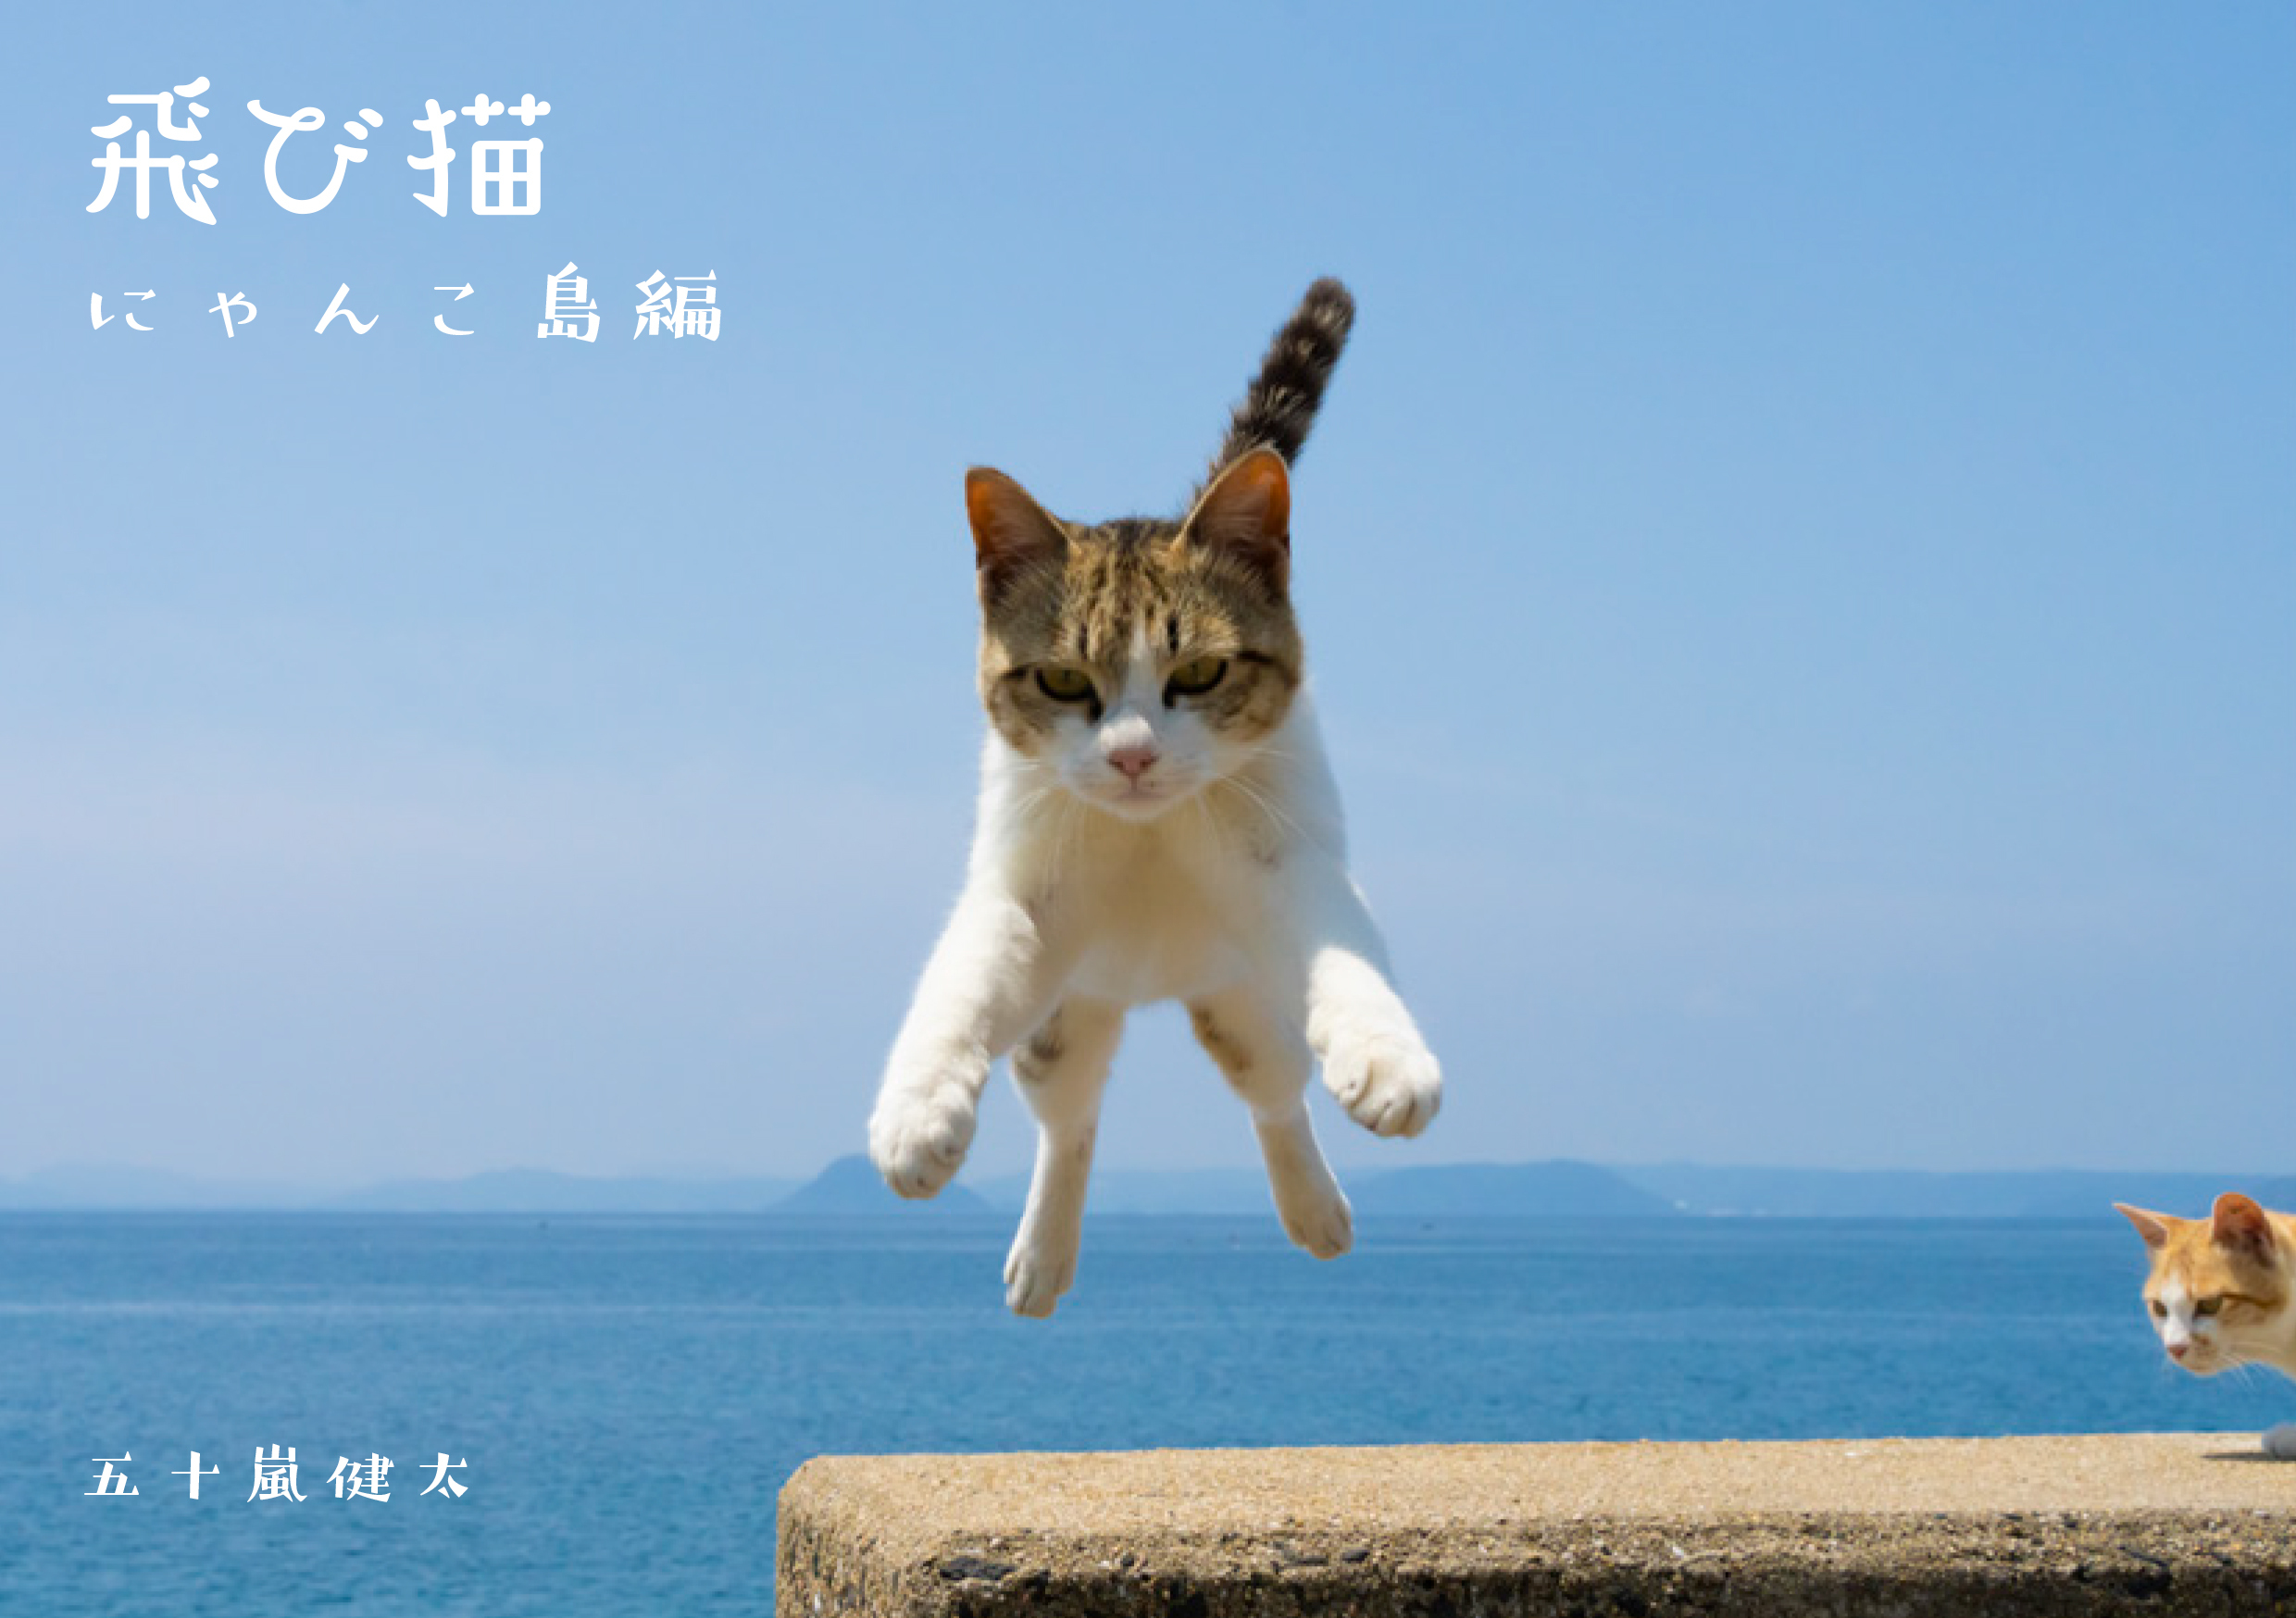 猫写真展 もふあつめ展 が渋谷のギャラリー ルデコで9月3日 土 4日 日 に開催 猫写真や猫作品約800点が大集合 飛び猫合同会社のプレスリリース